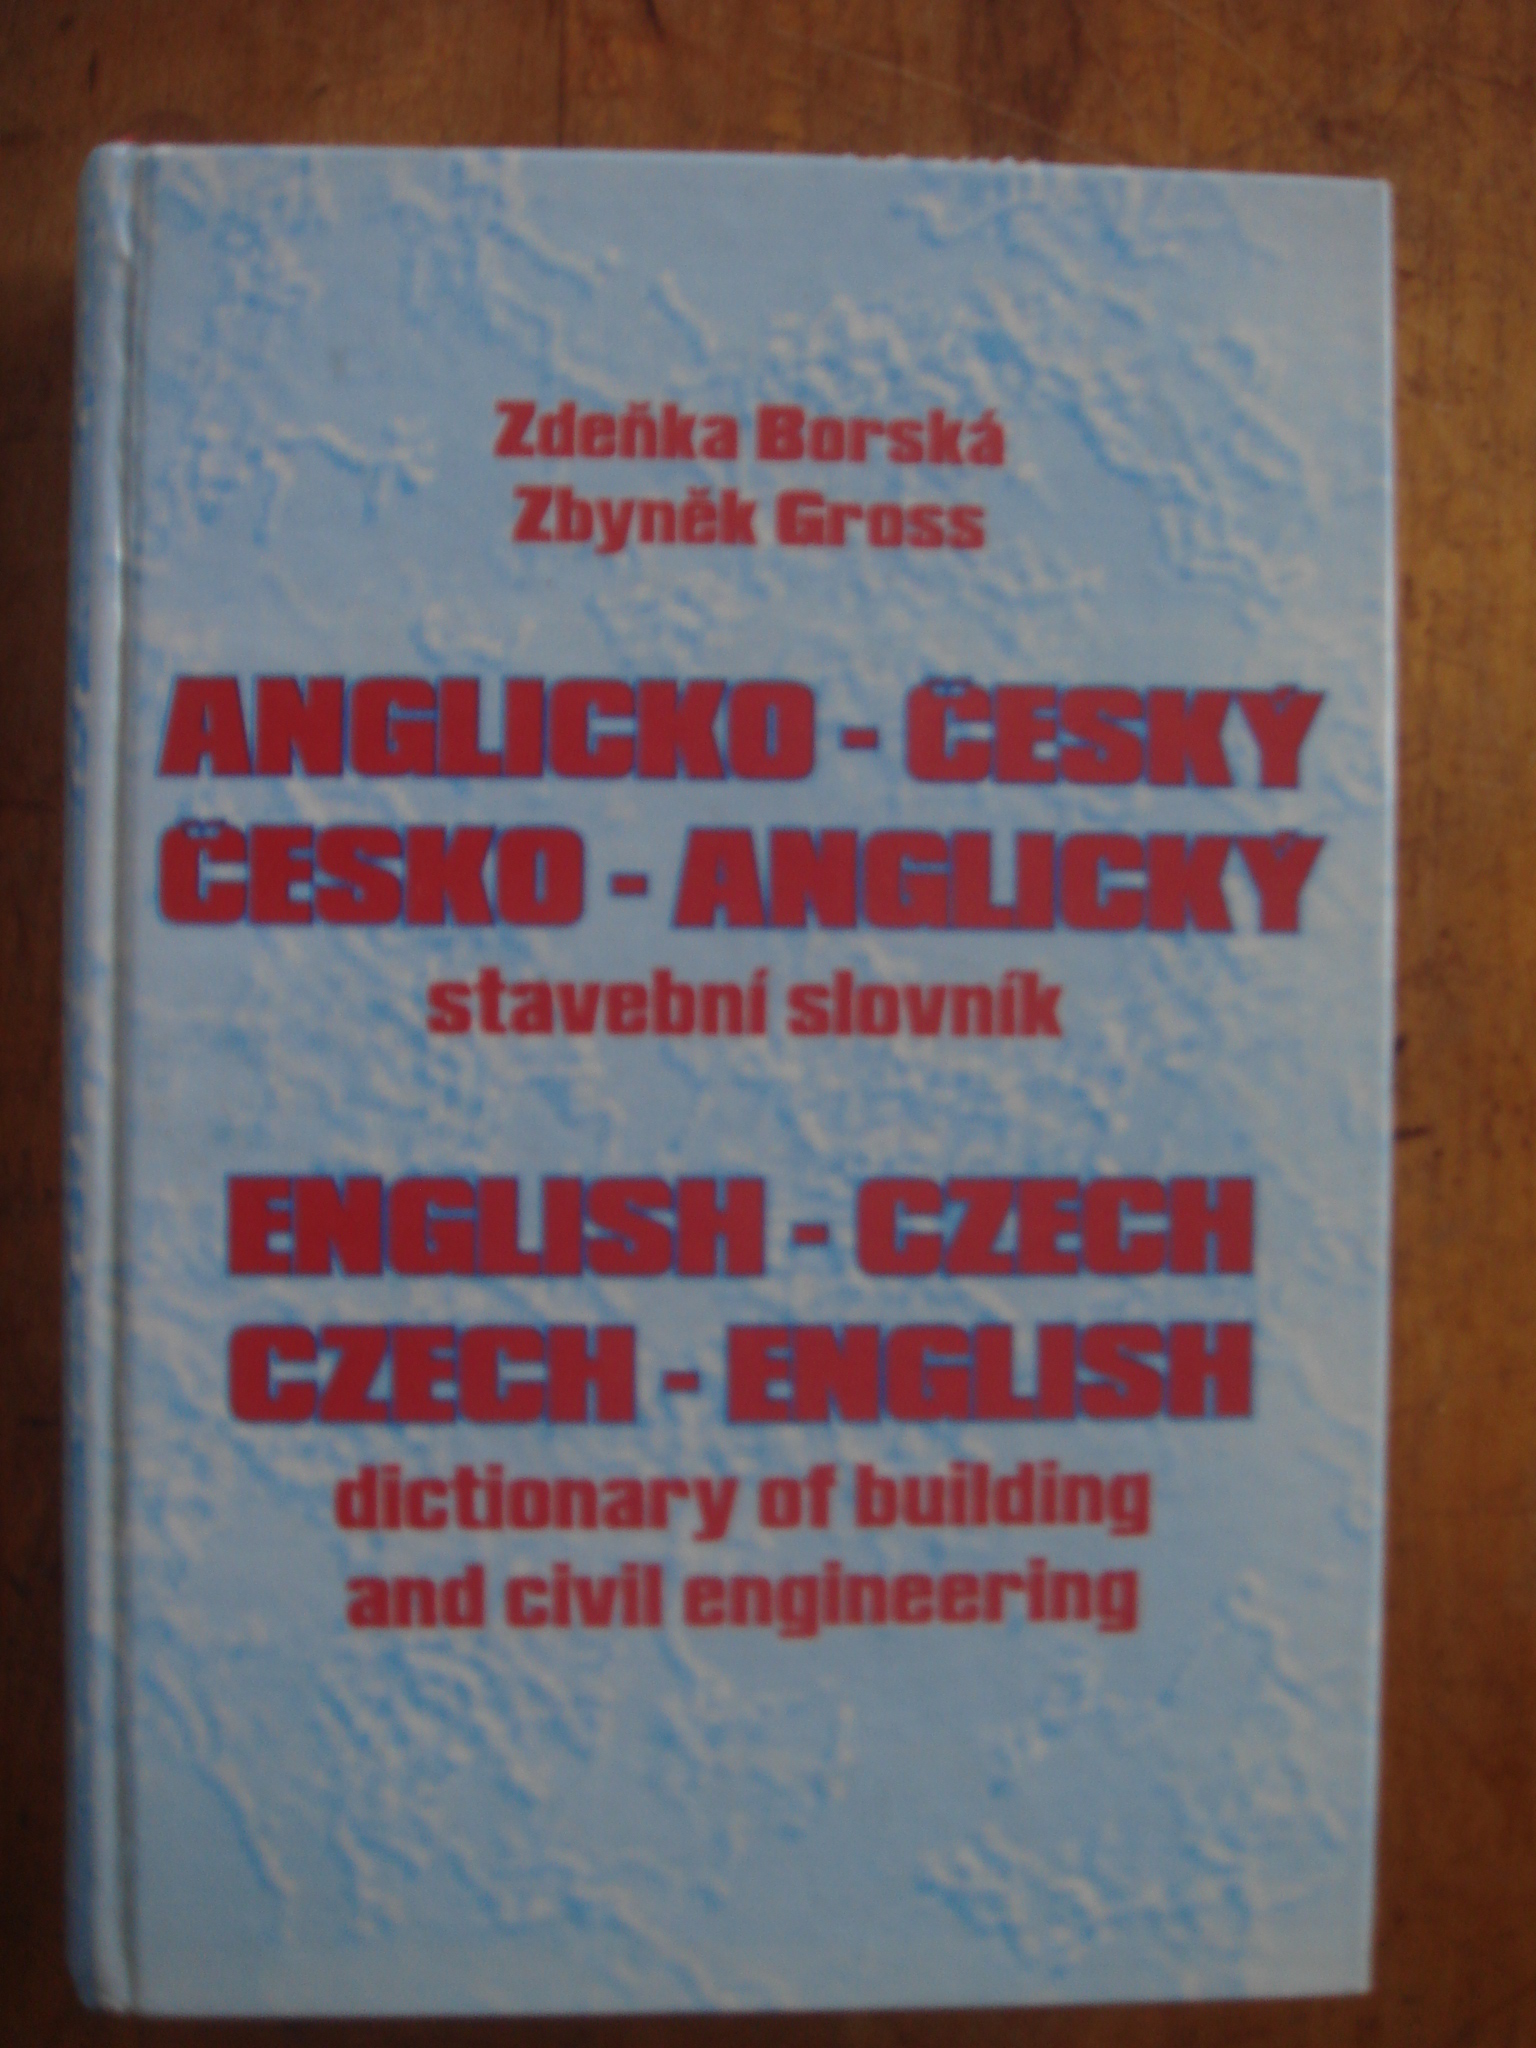 zobrazit detail knihy Borská, Zdeňka; Gross, Zbyněk: Anglicko-český, čes